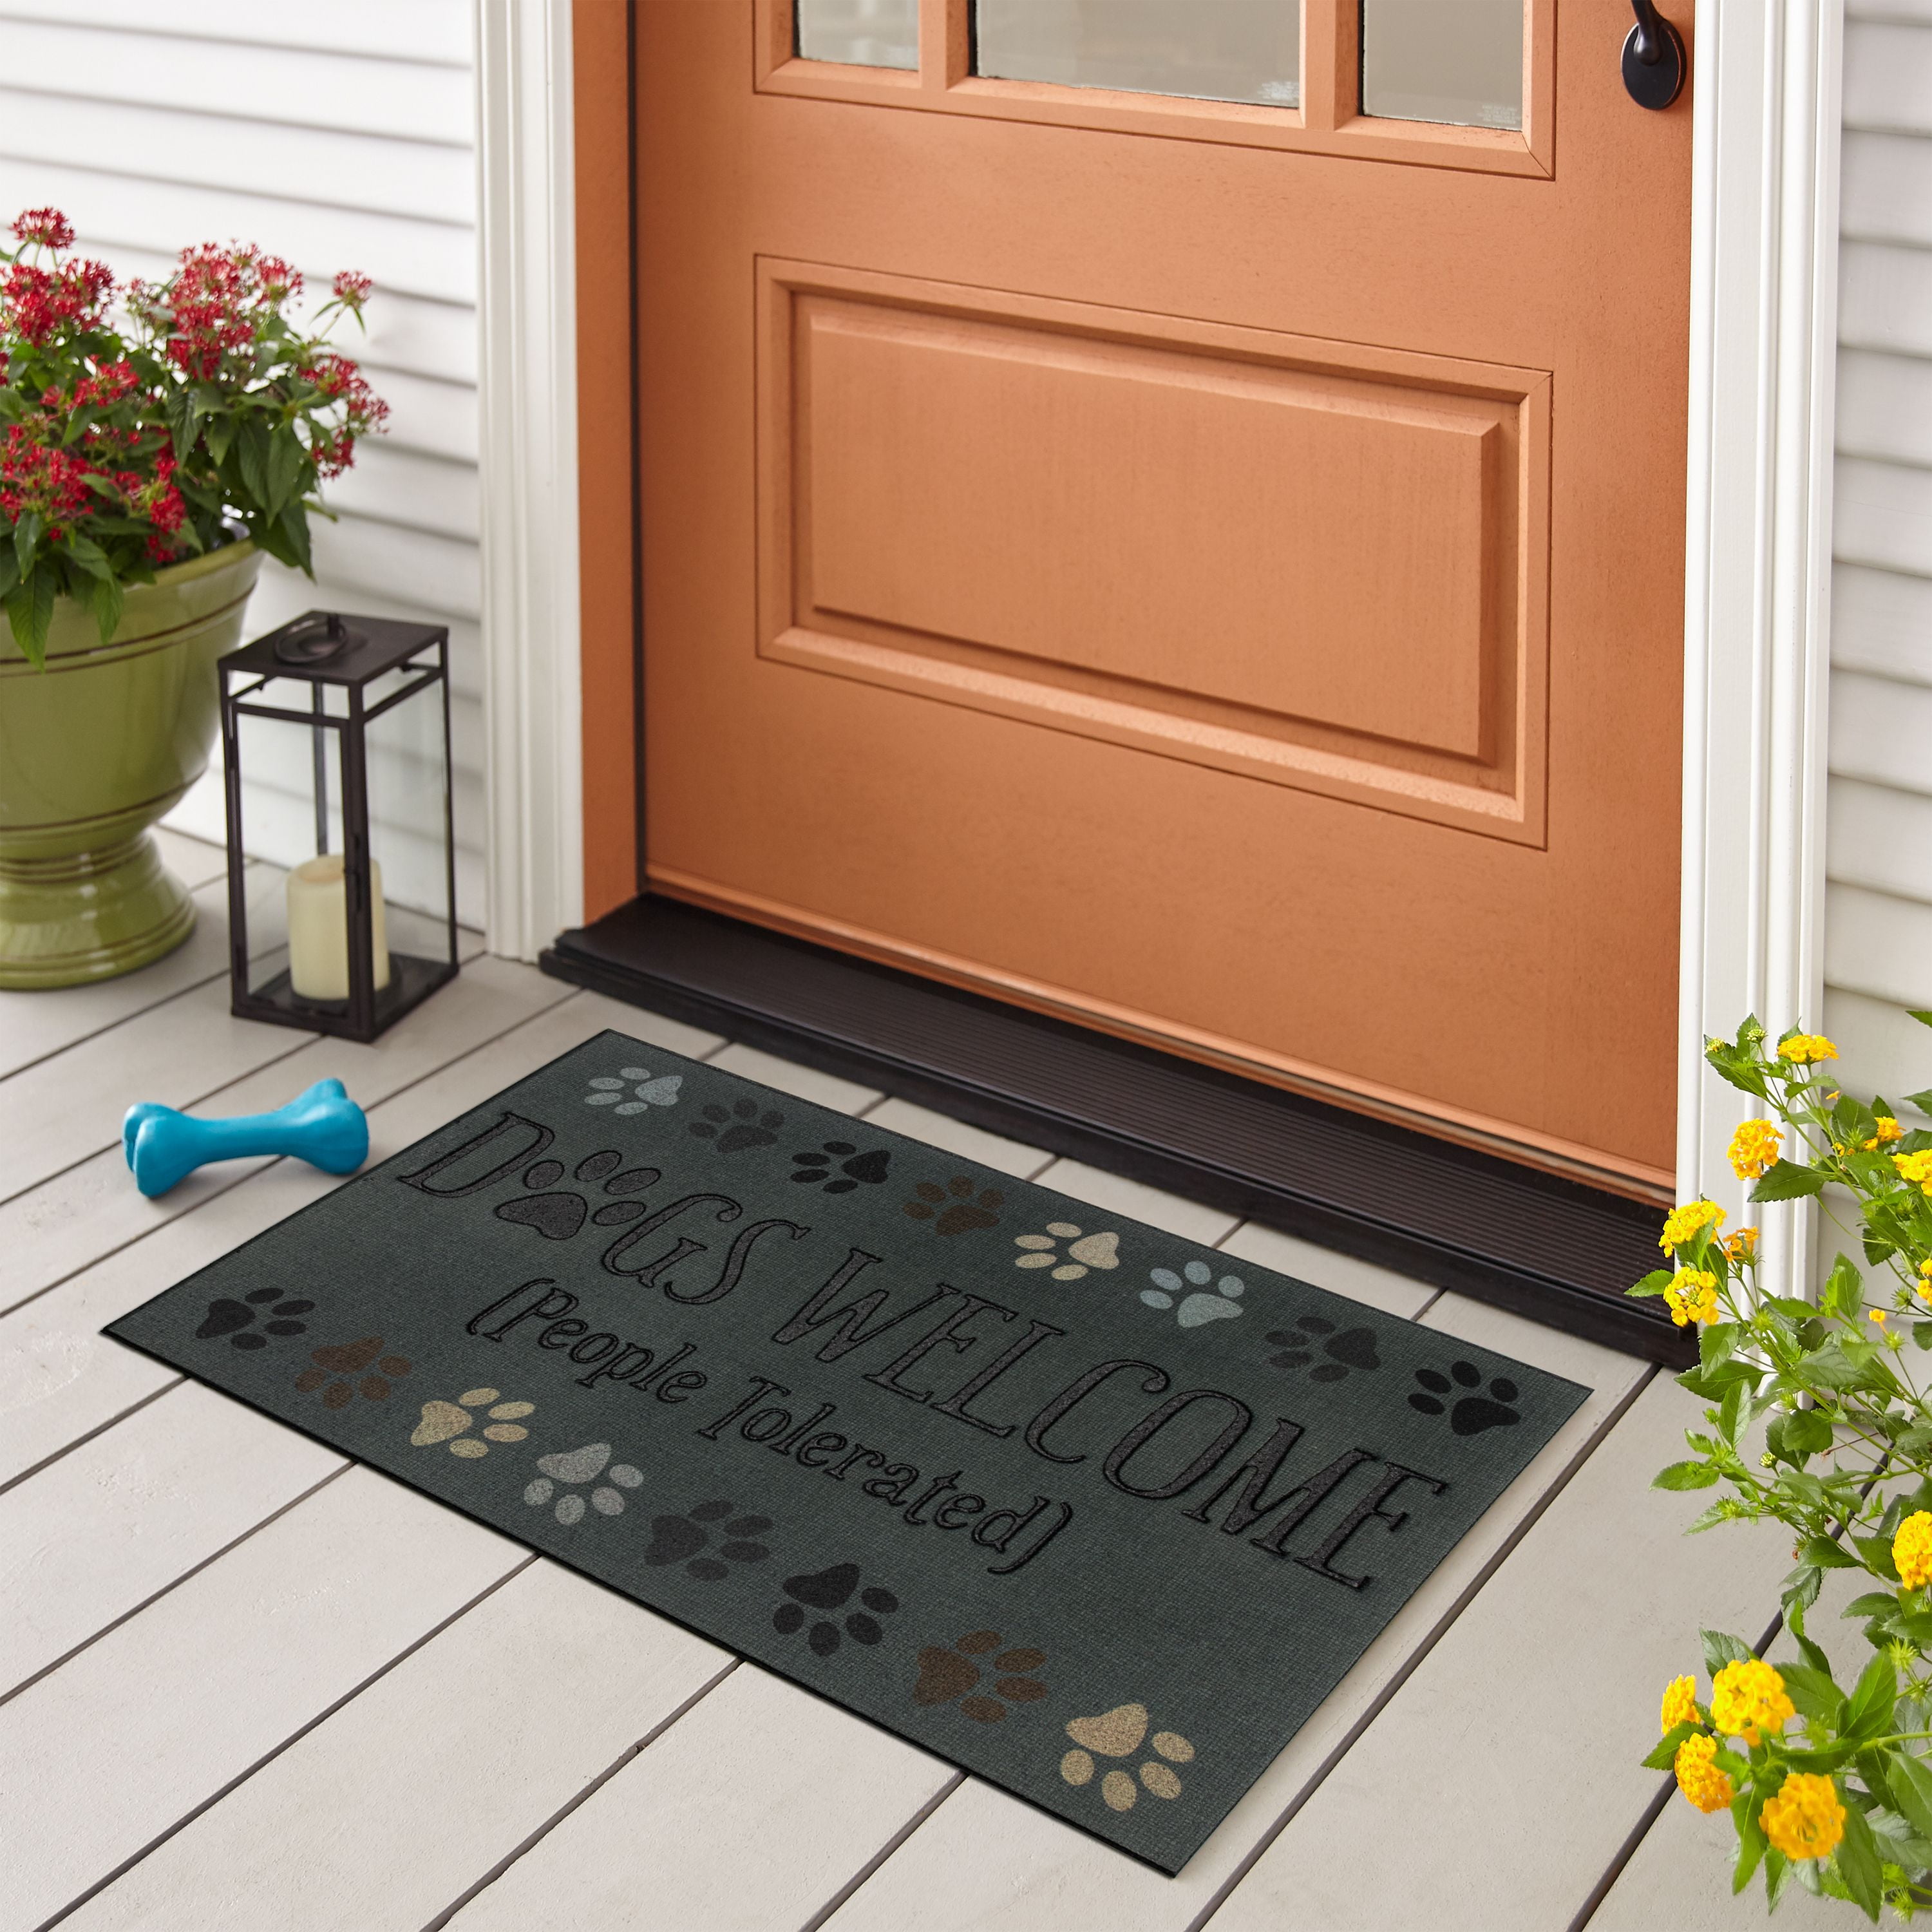 Welcome Doormat Outdoor Heavy Duty 20 X 30 Home Door Mat Beige Black for sale online 